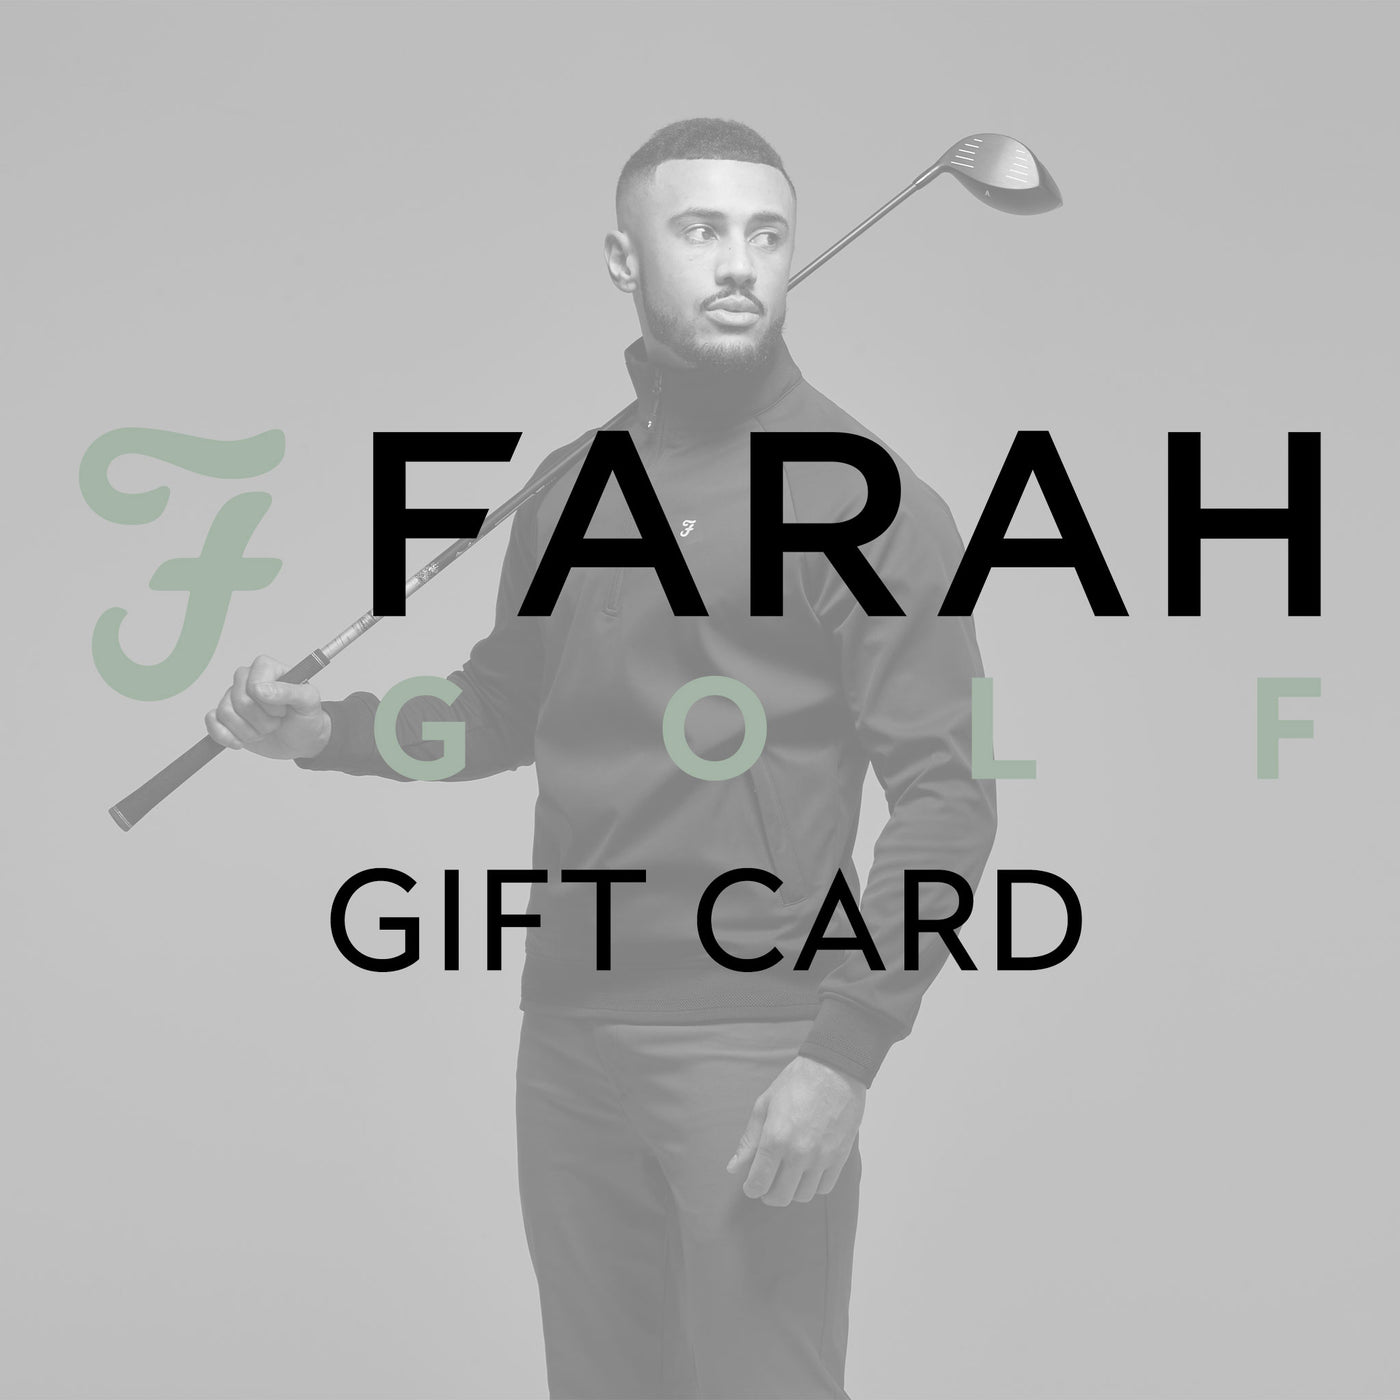 Farah Golf Gift Card.